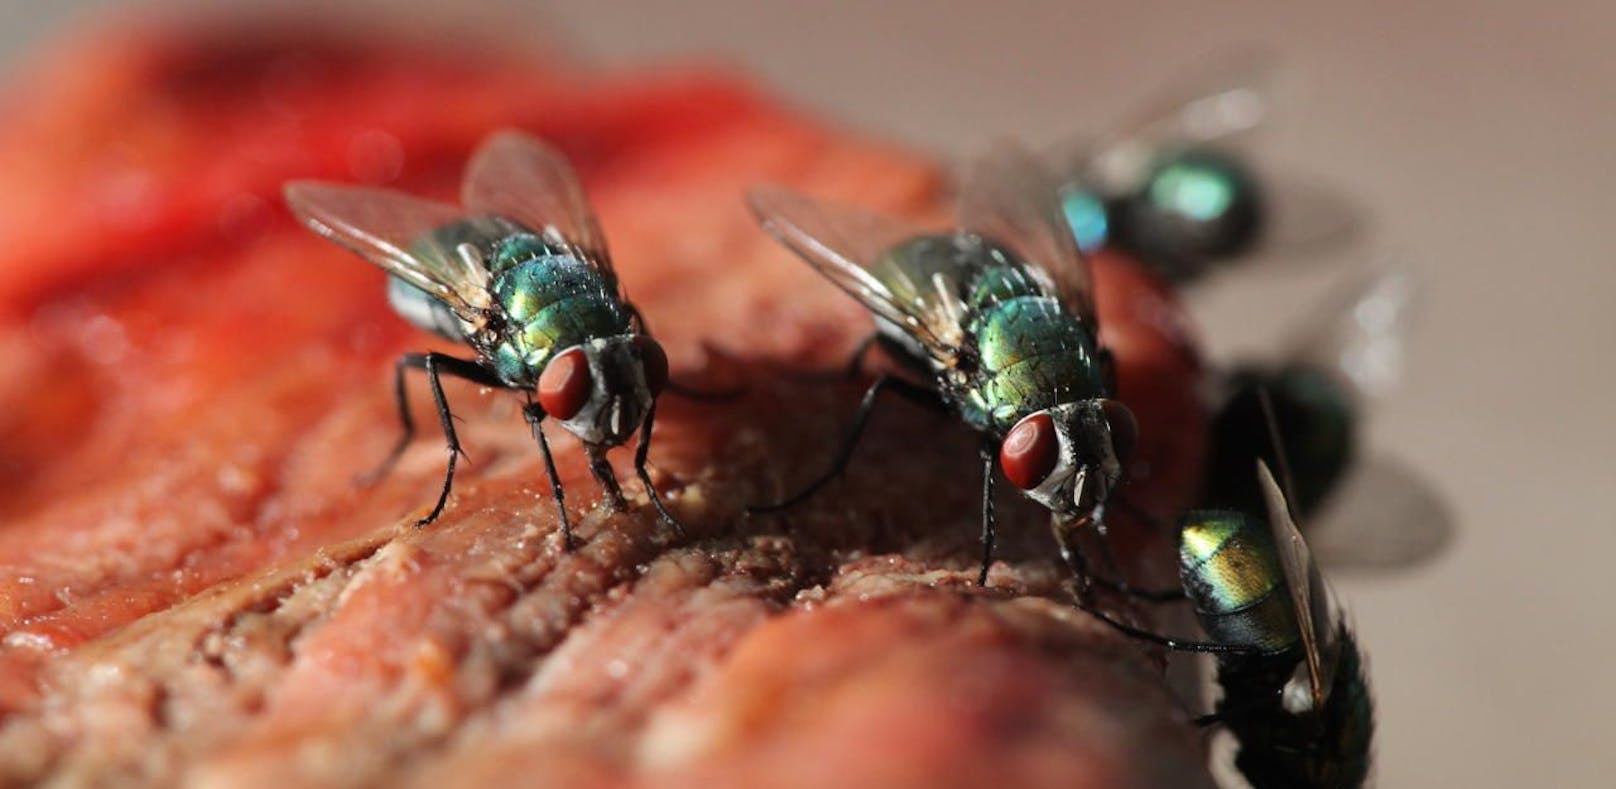 Ungesund: Fliegen übertragen ekelhafte (und teilweise gefährliche) Bakterien.